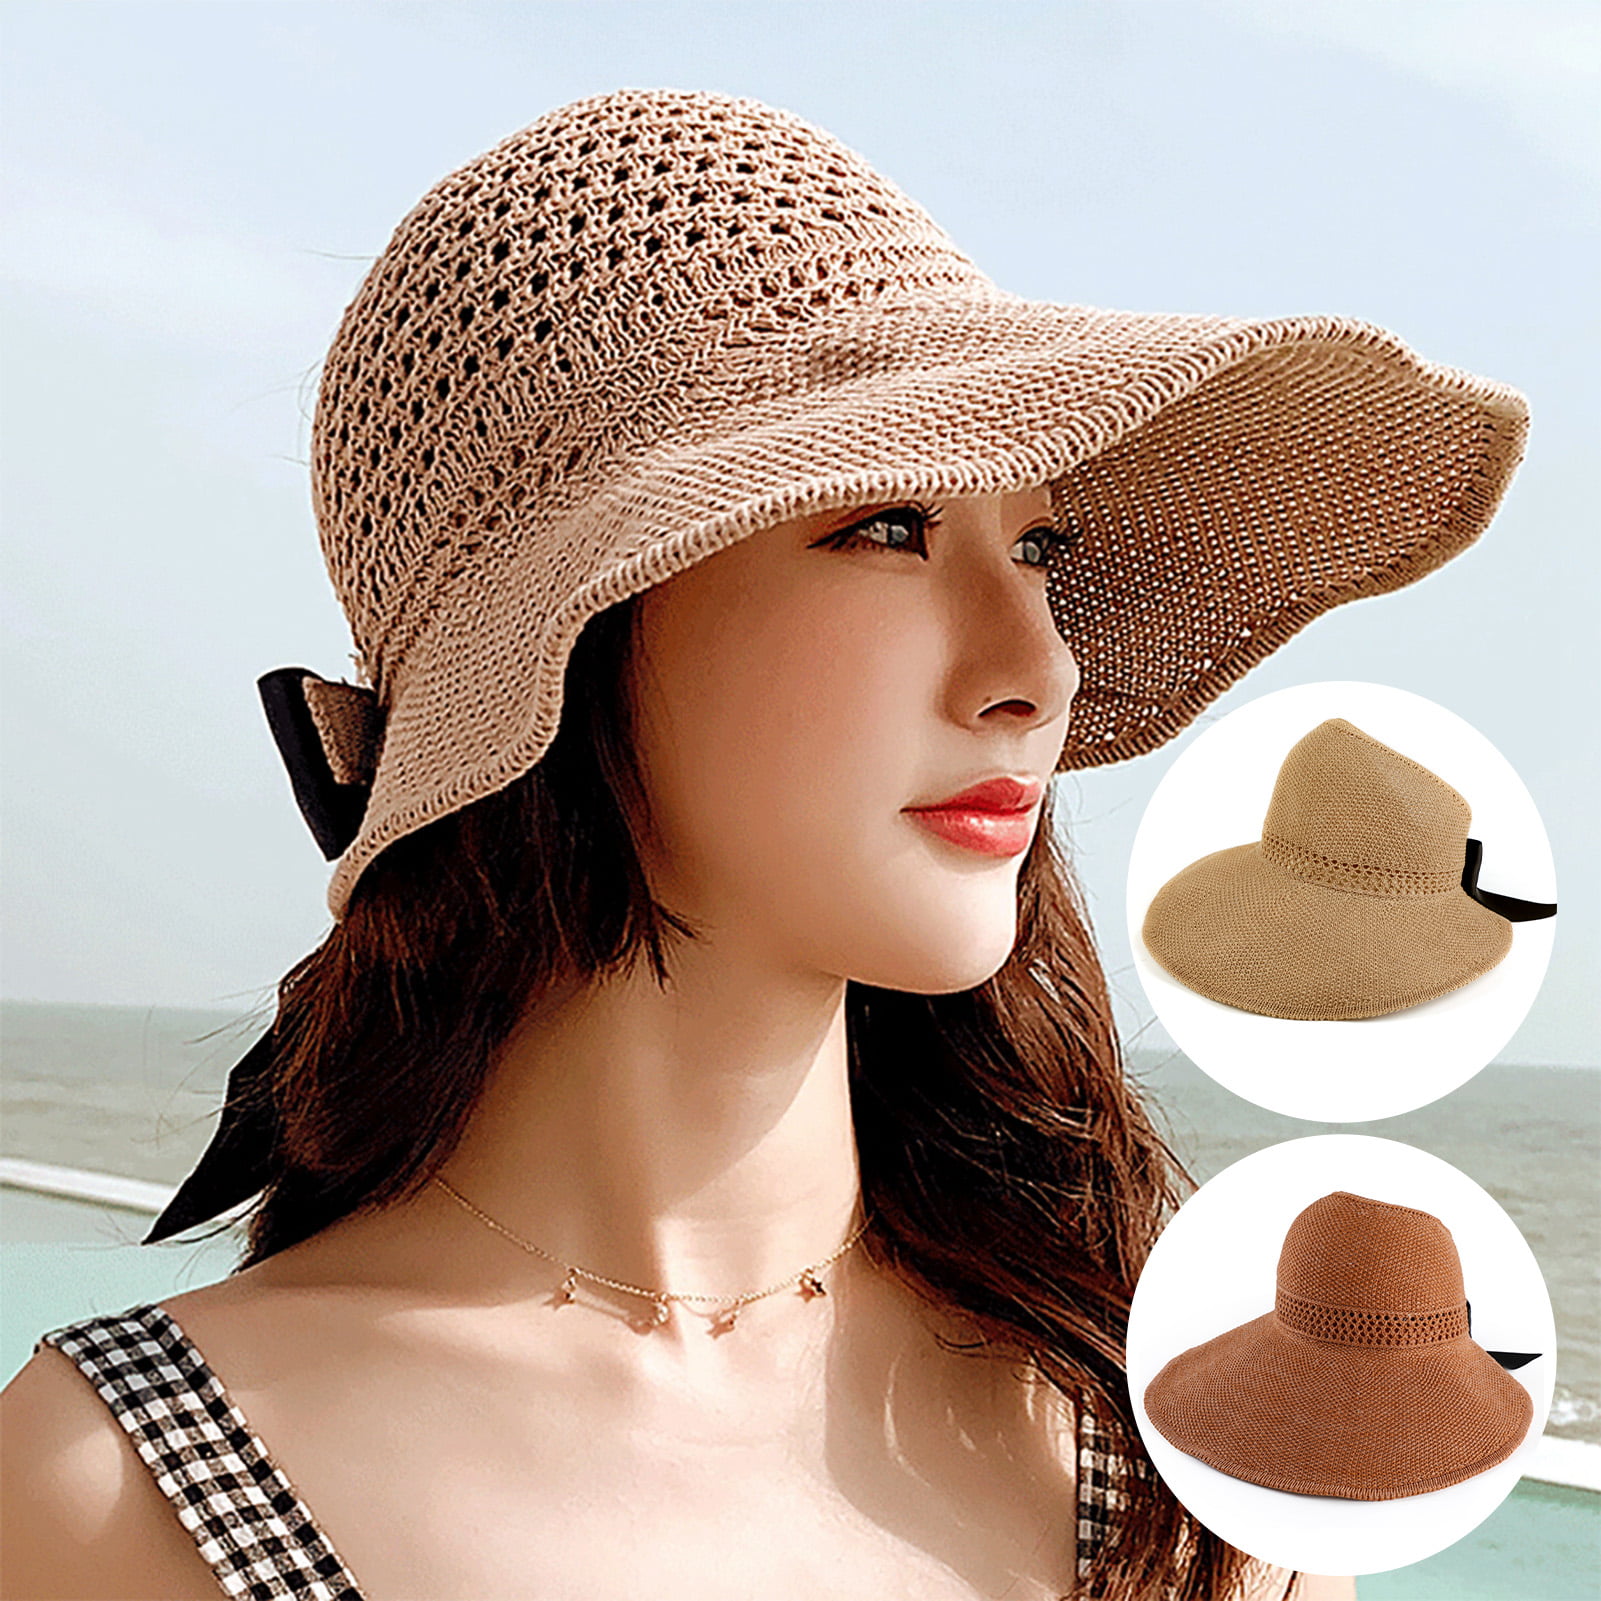 Hats for Women Summer Sunhat Large Brim Sun Hat UV Sun Hats Korean Fashion Cap Leisure Cap